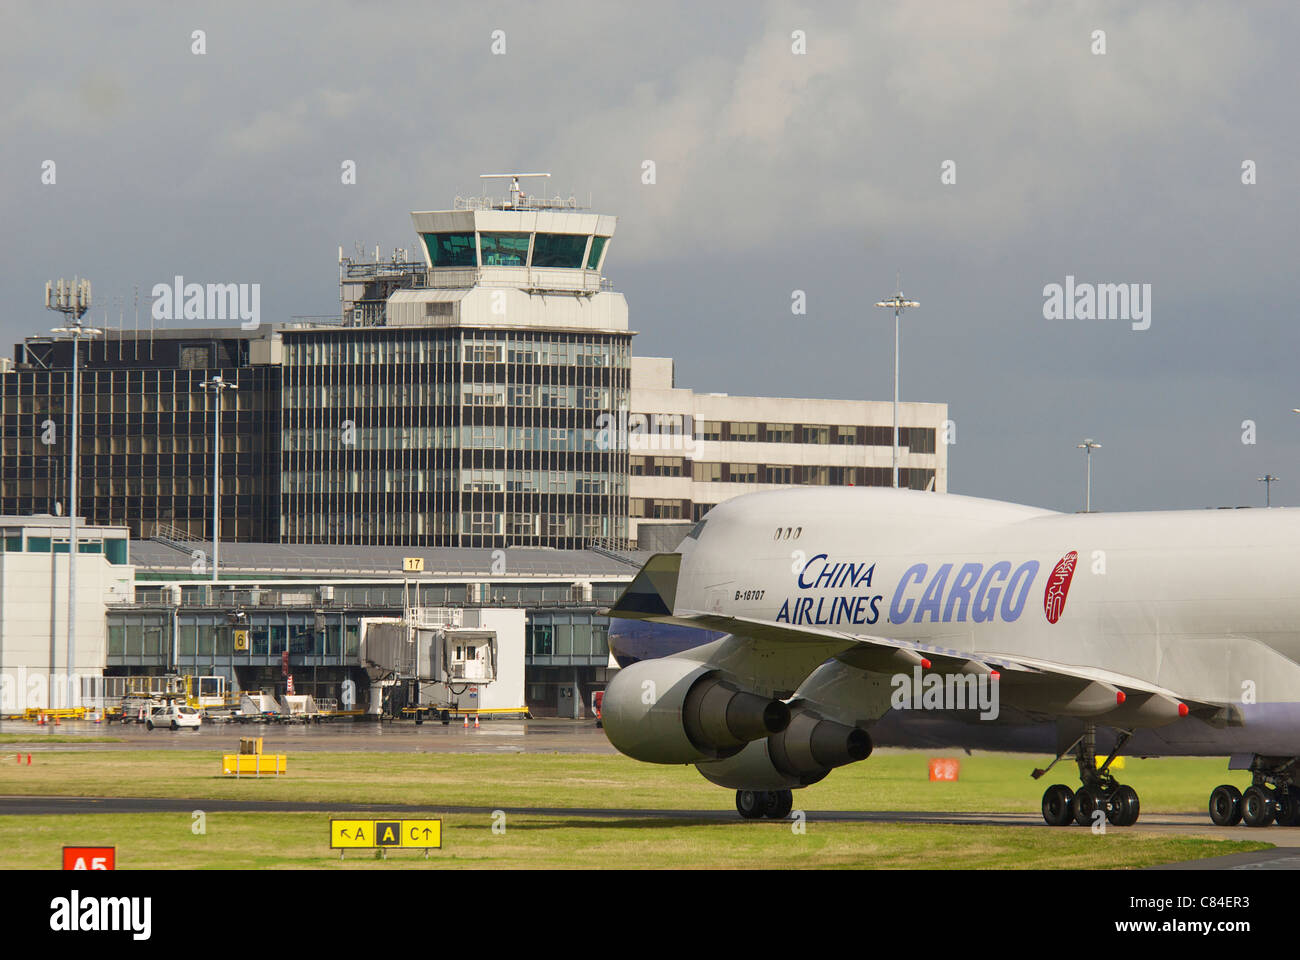 China Airlines Boeing 747 jumbo cargo à l'aéroport de Manchester. Banque D'Images